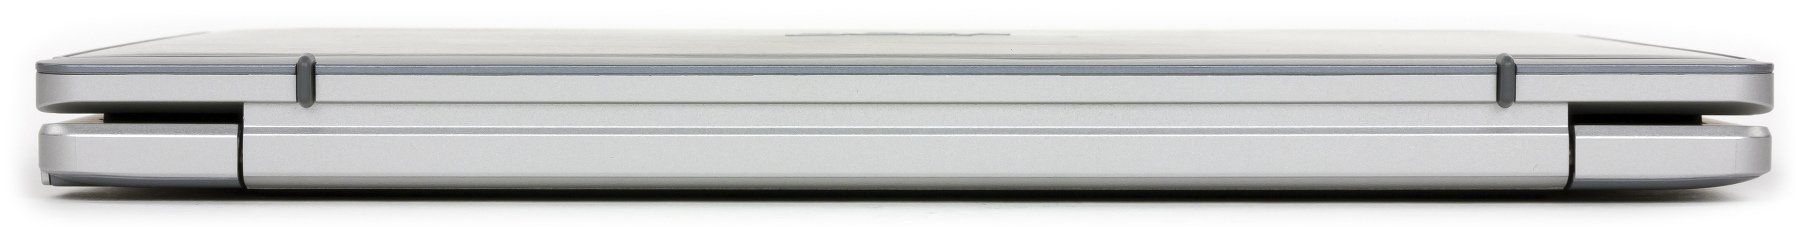 Внешний вид Acer Aspire Switch 10